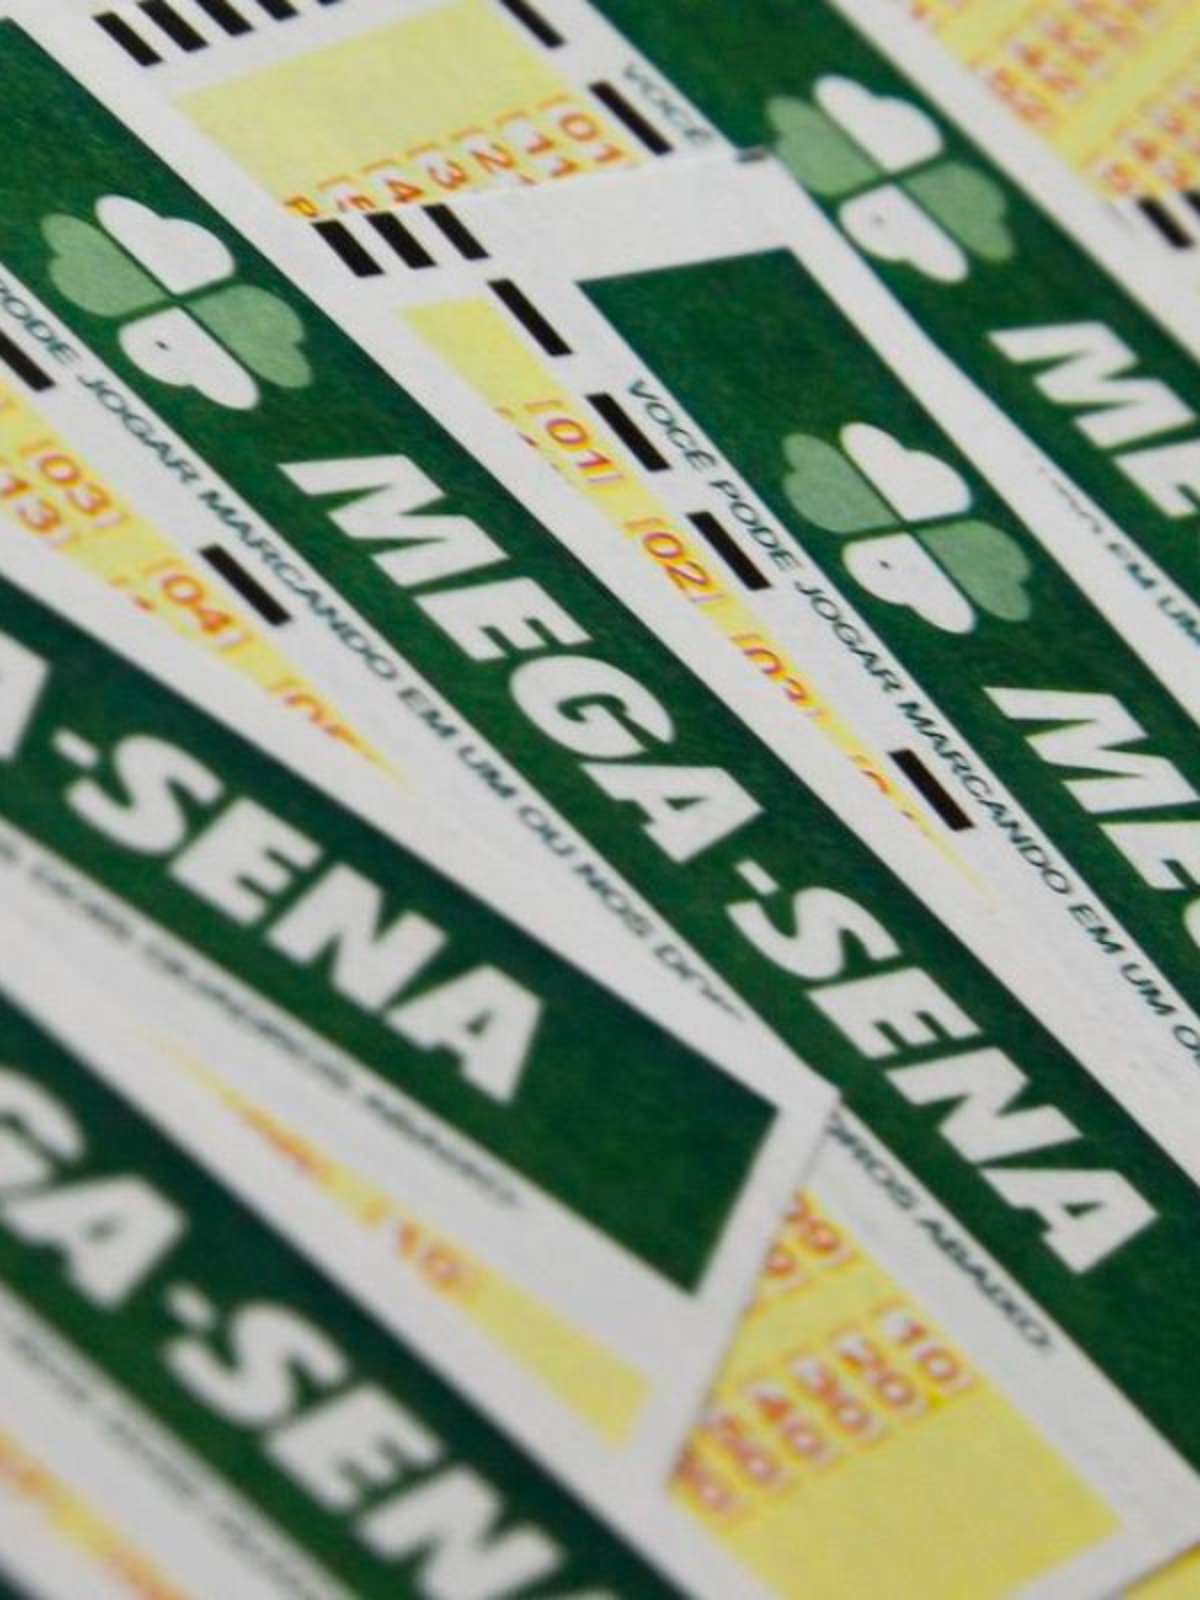 Mega-Sena acumula e próximo sorteio vai pagar R$ 39 milhões